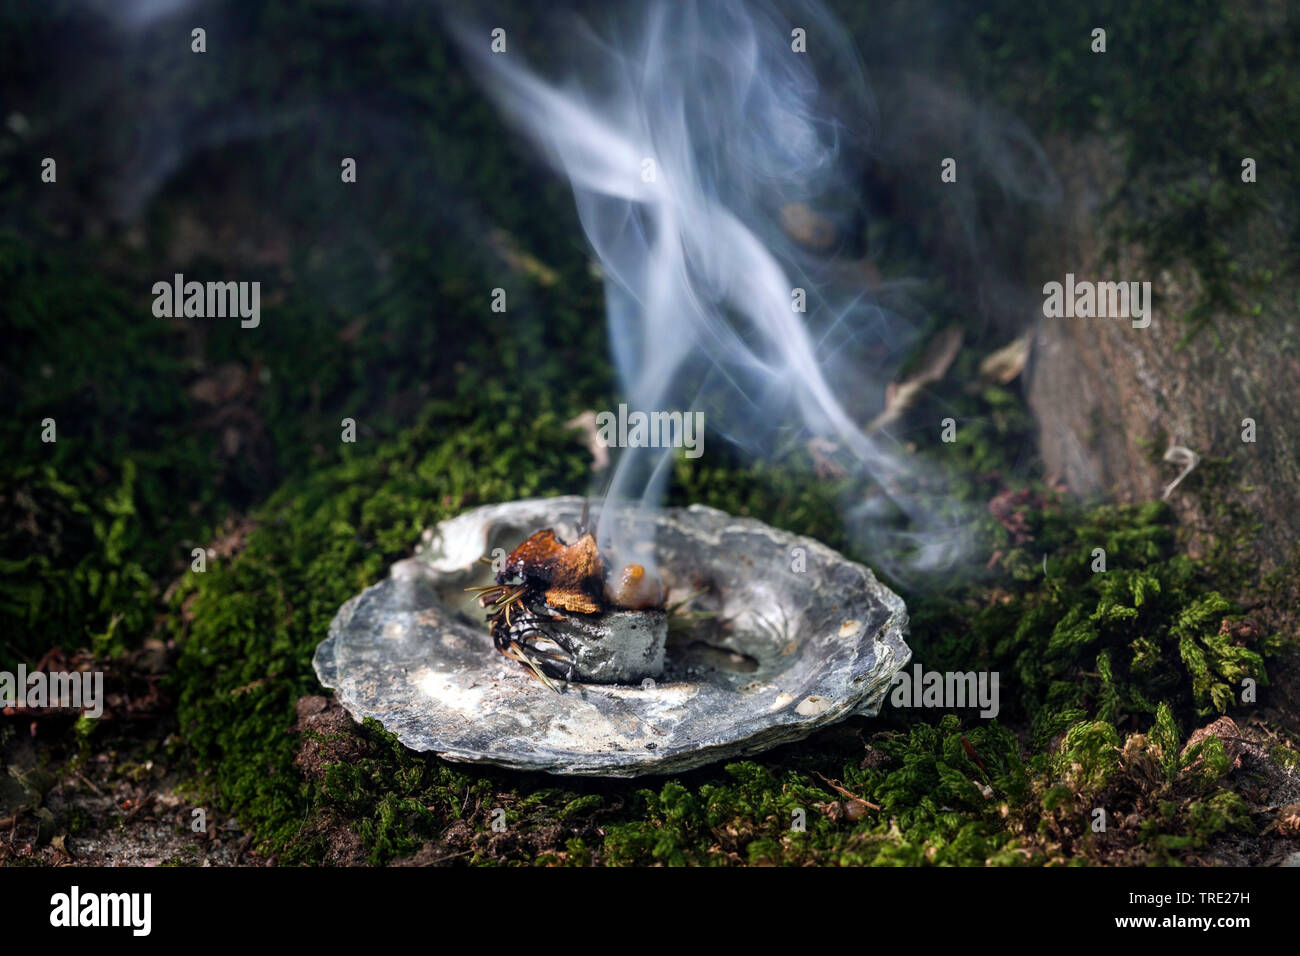 Rauchen; Rauchen mit Wacholder, Baum Gummi- und rauchend Kohle, Deutschland Stockfoto